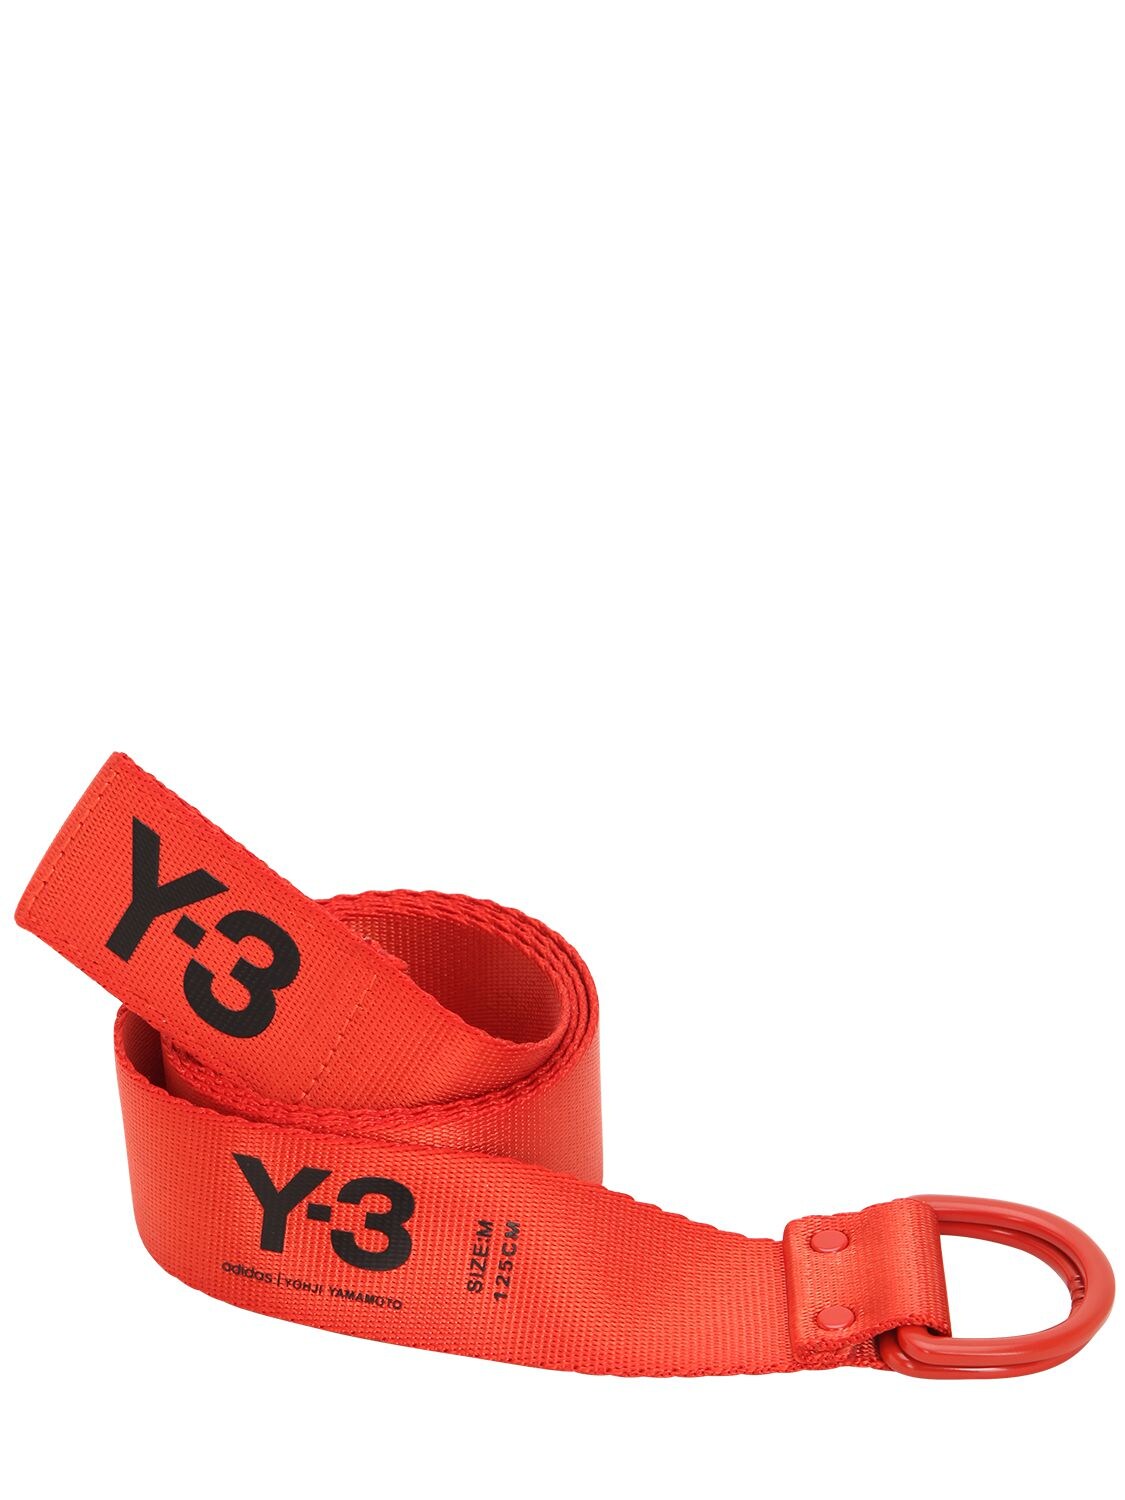 y3 belt red